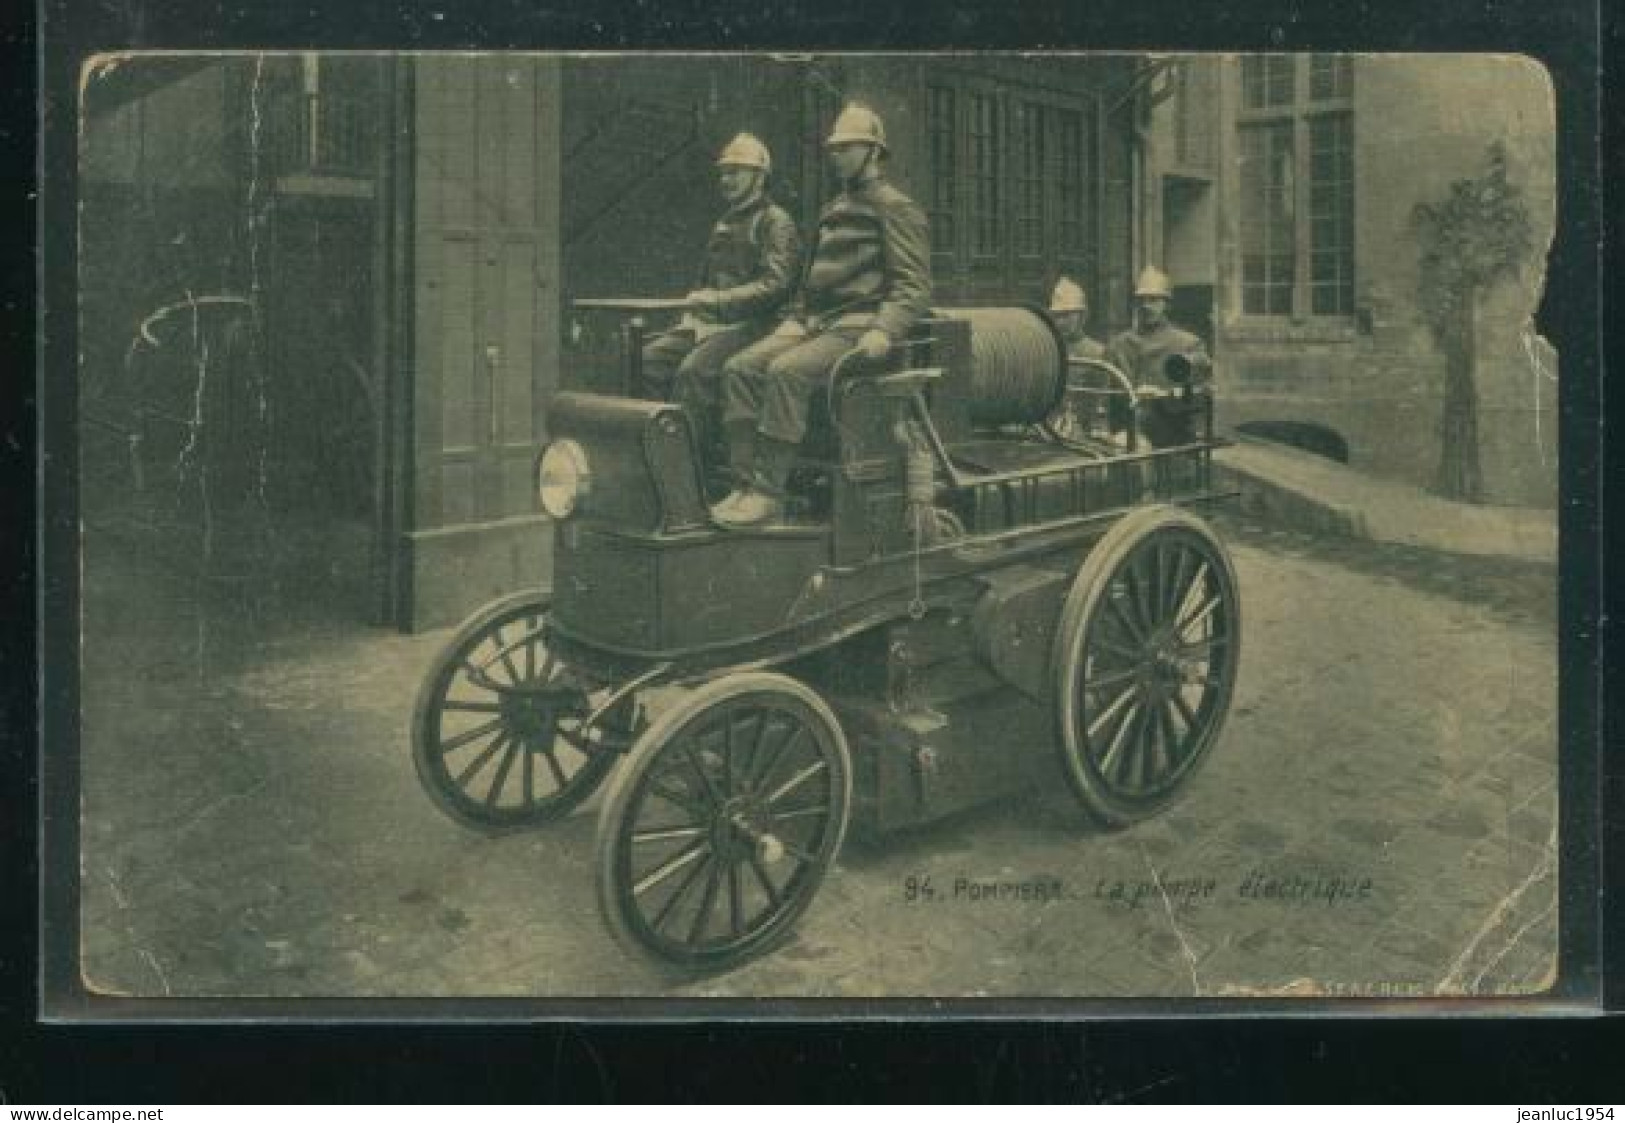 POMPIERS 1900 LA POMPE ELECTRIQUE   ( MES PHOTOS NE SONT PAS JAUNES ) - Pompieri